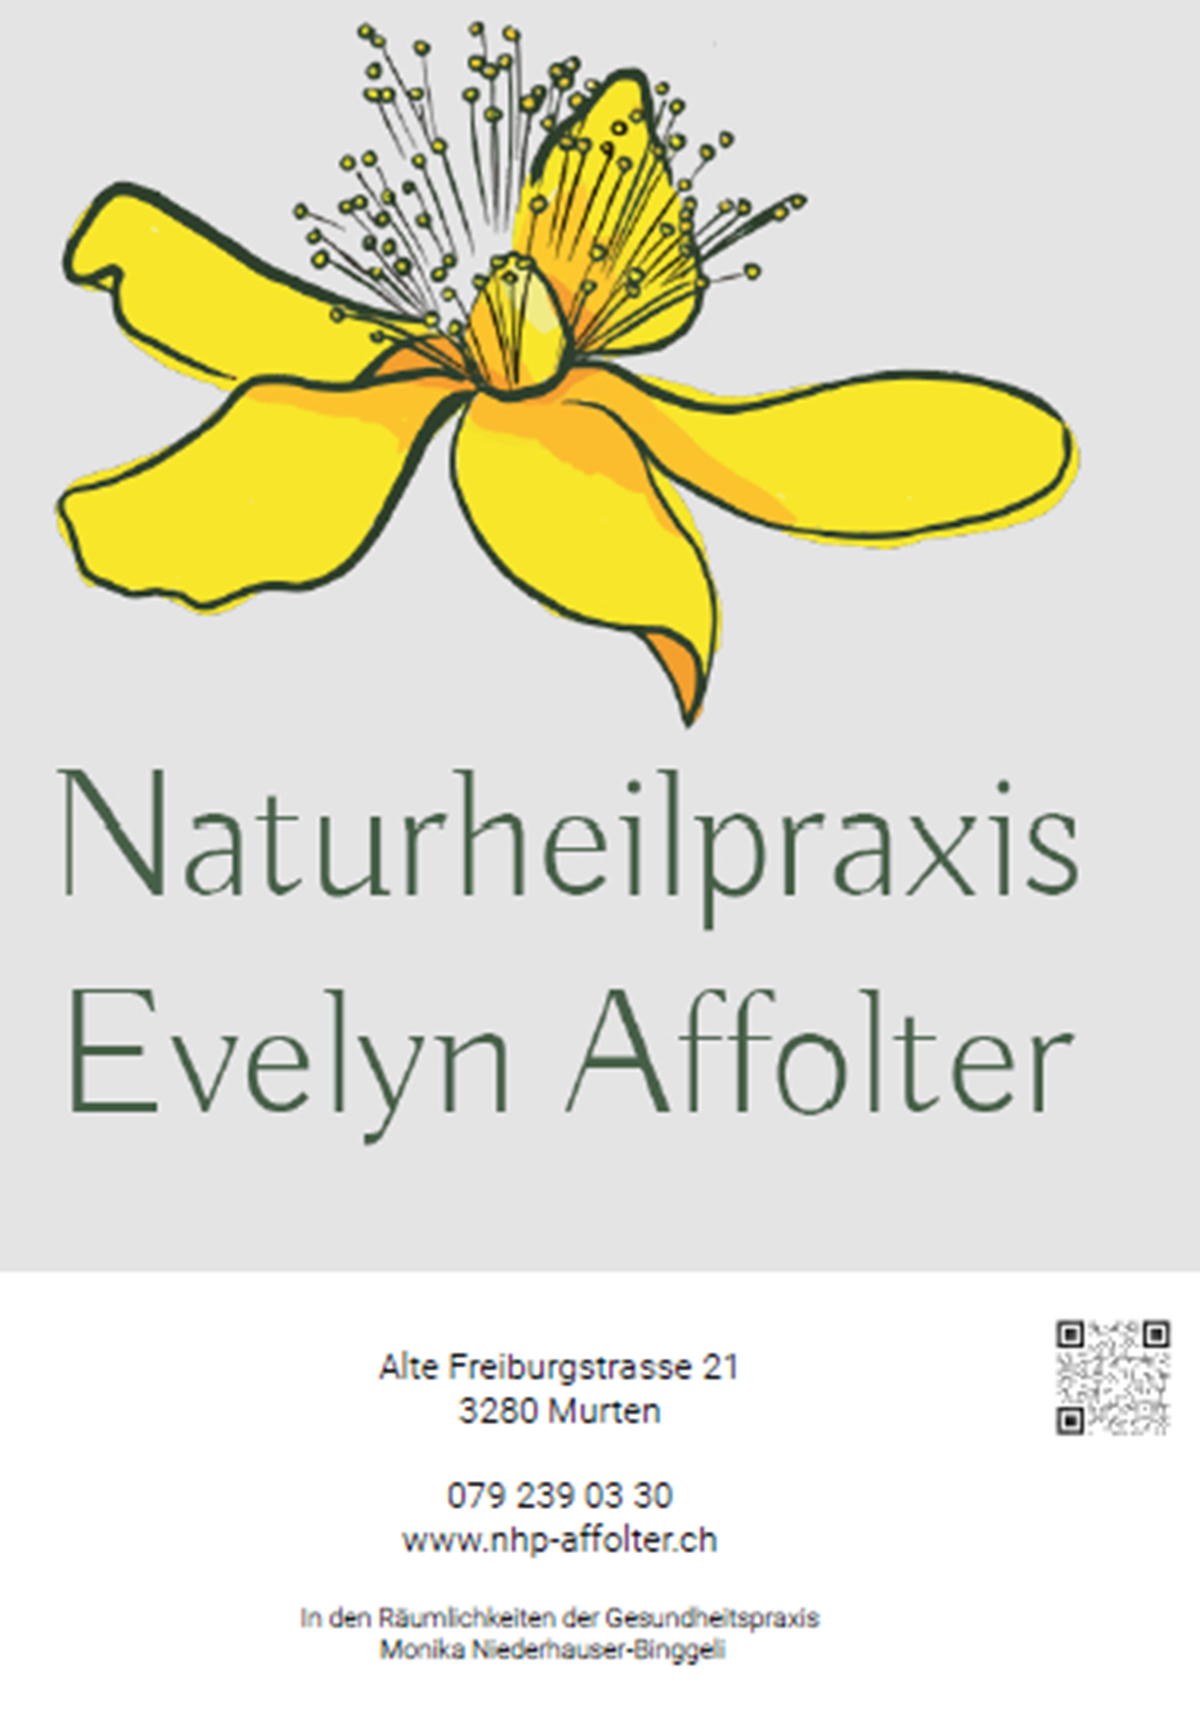 Naturheilpraxis Evelyn Affolter